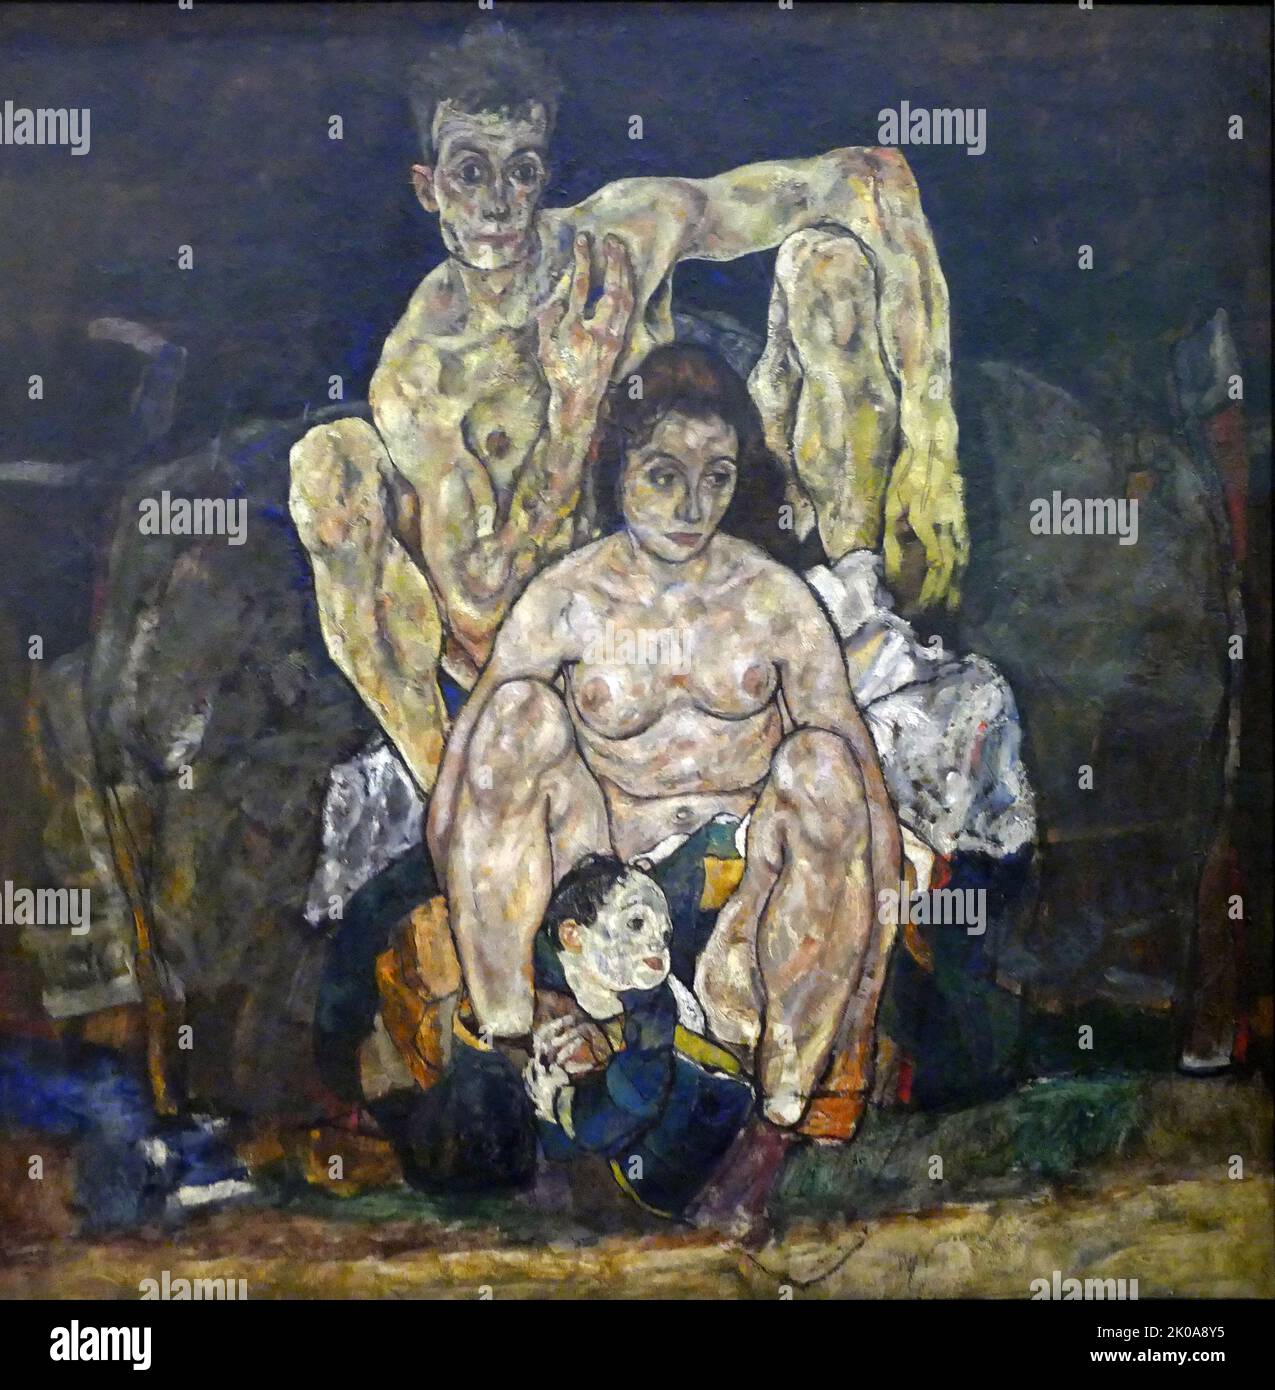 La famille, 1918, huile sur toile par Ego Schiele. Egon Leo Adolf Ludwig Schiele (12 juin 1890 - 31 octobre 1918) est un peintre expressionniste autrichien. Protesté de Gustav Klimt, Schiele était un peintre figuratif majeur du début du 20th siècle Banque D'Images